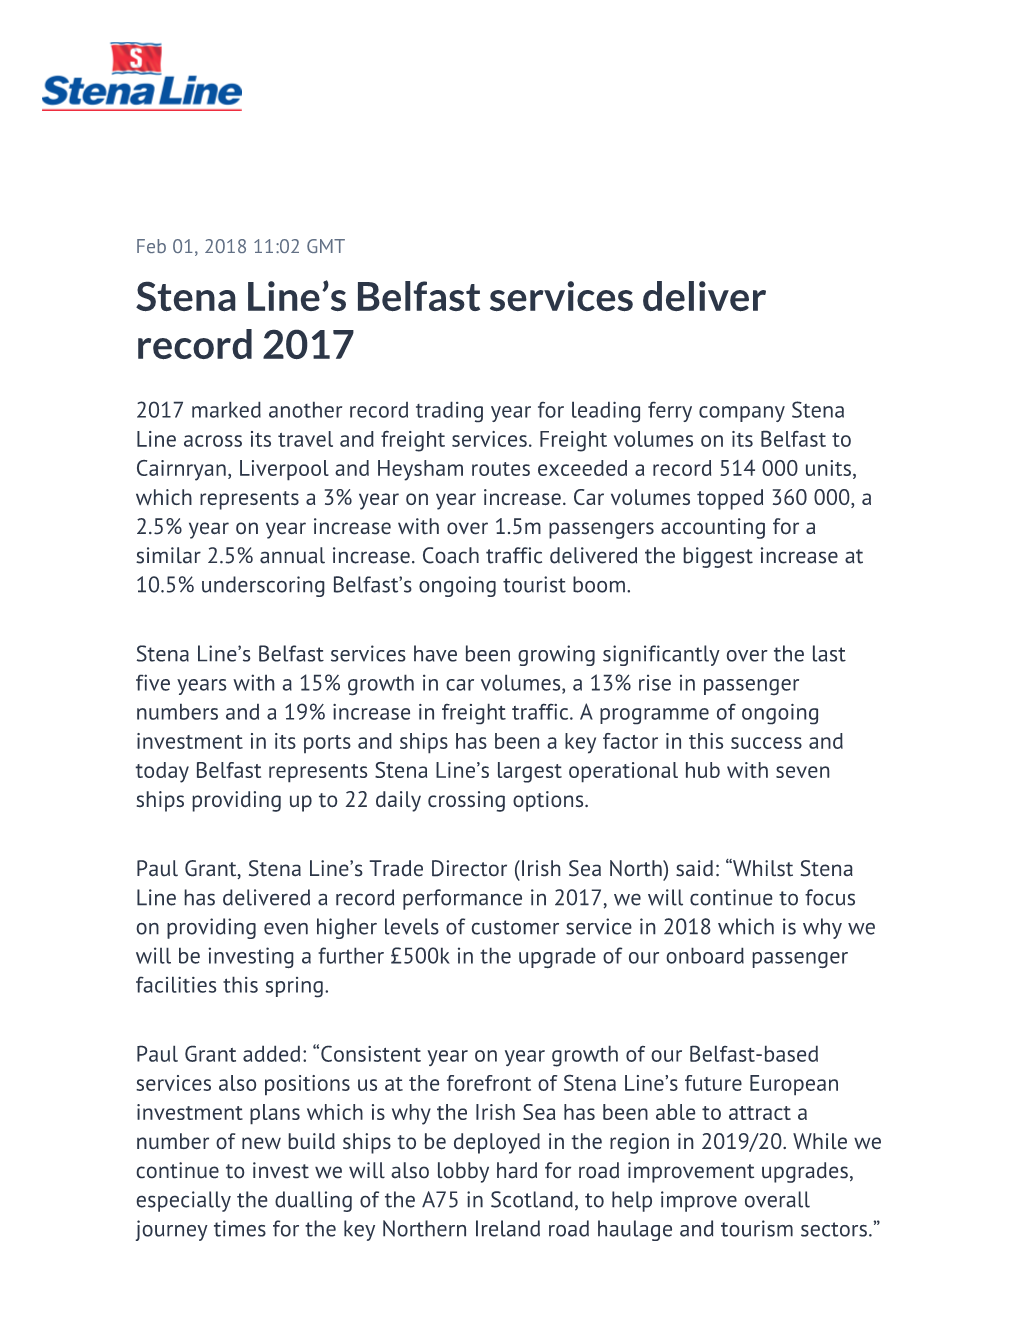 Stena Line's Belfast Services Deliver Record 2017